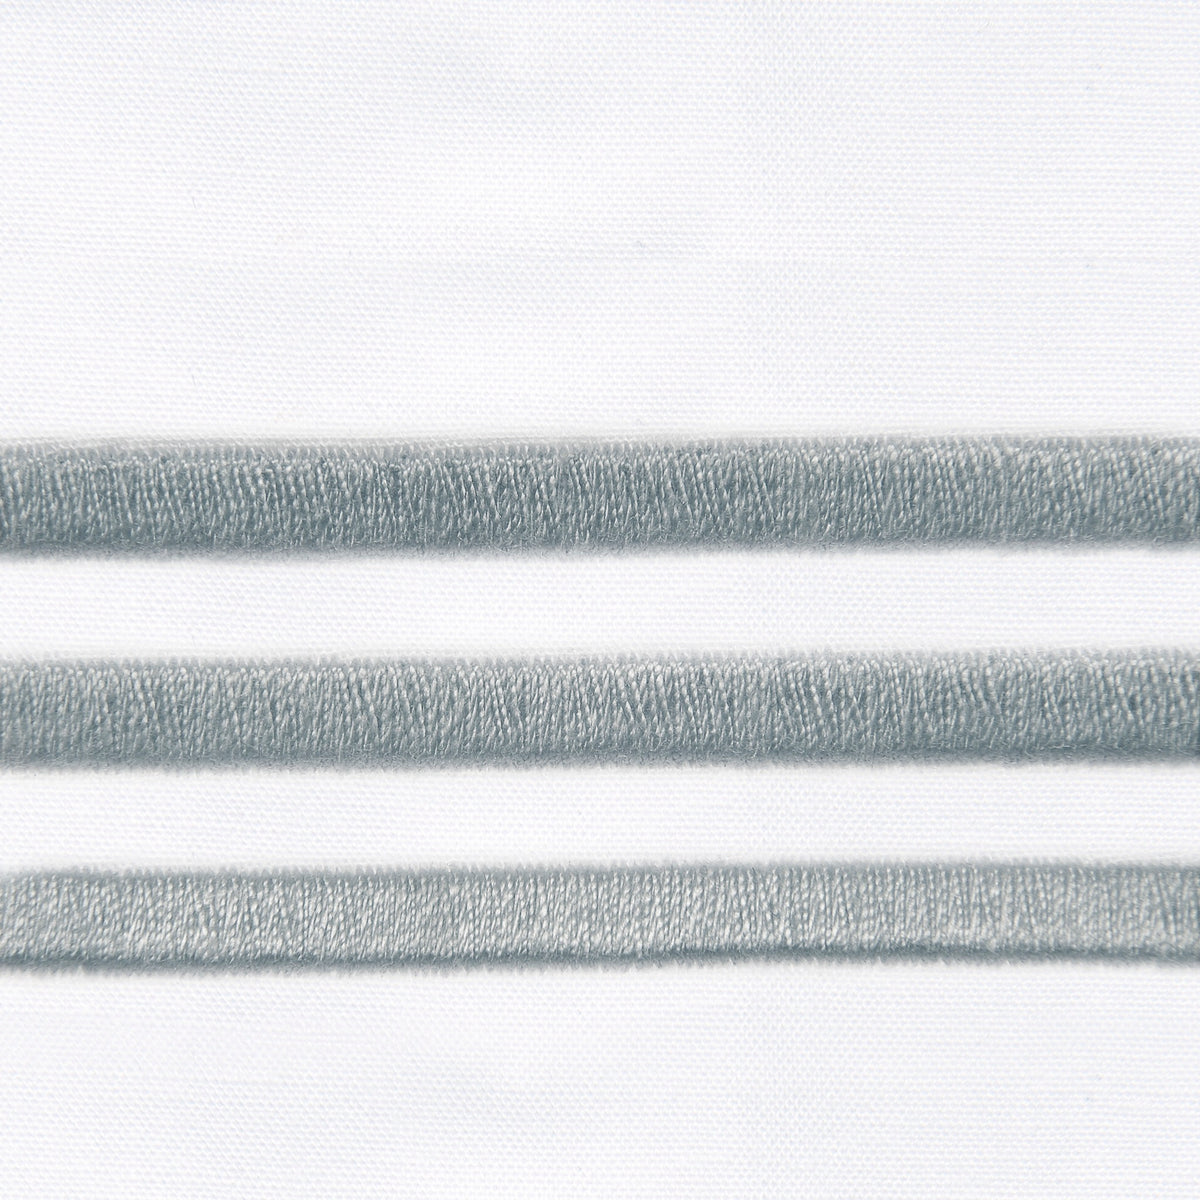 Fabric Closeup of Signoria Platinum Percale Bedding in White/Wilton Blue Color